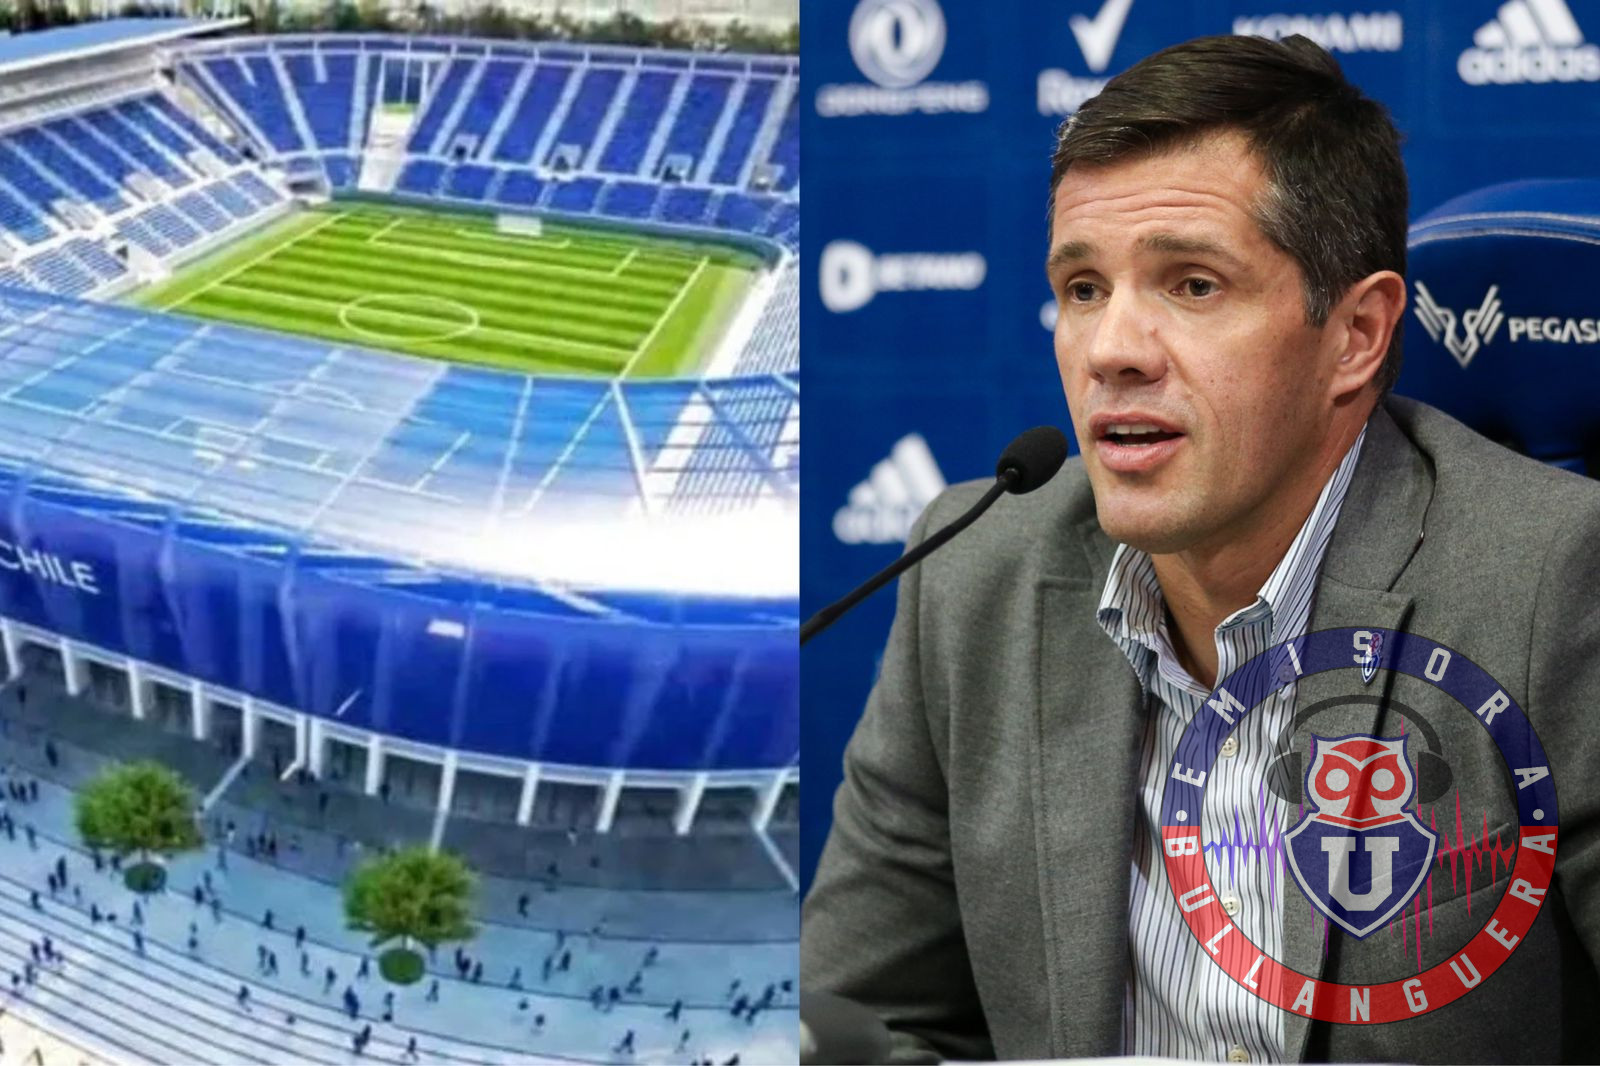 Michael Clark sobre el sueño del estadio para la U: “Llevamos trabajando más de seis meses, pero sin hacer ruido”